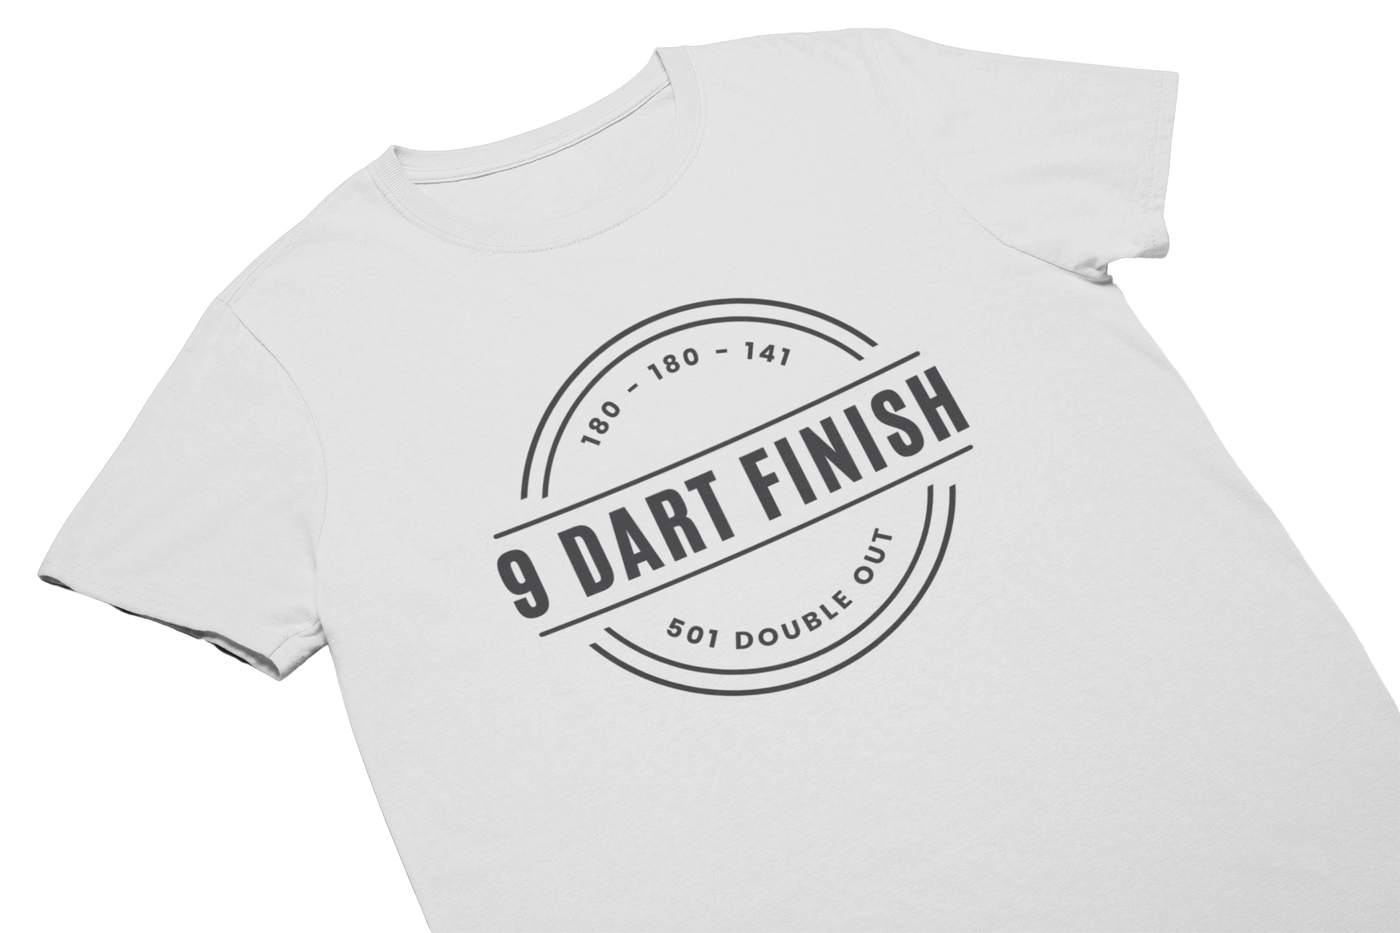 9 DART FINISH (Schwarzes Logo) - T-Shirt Weiss